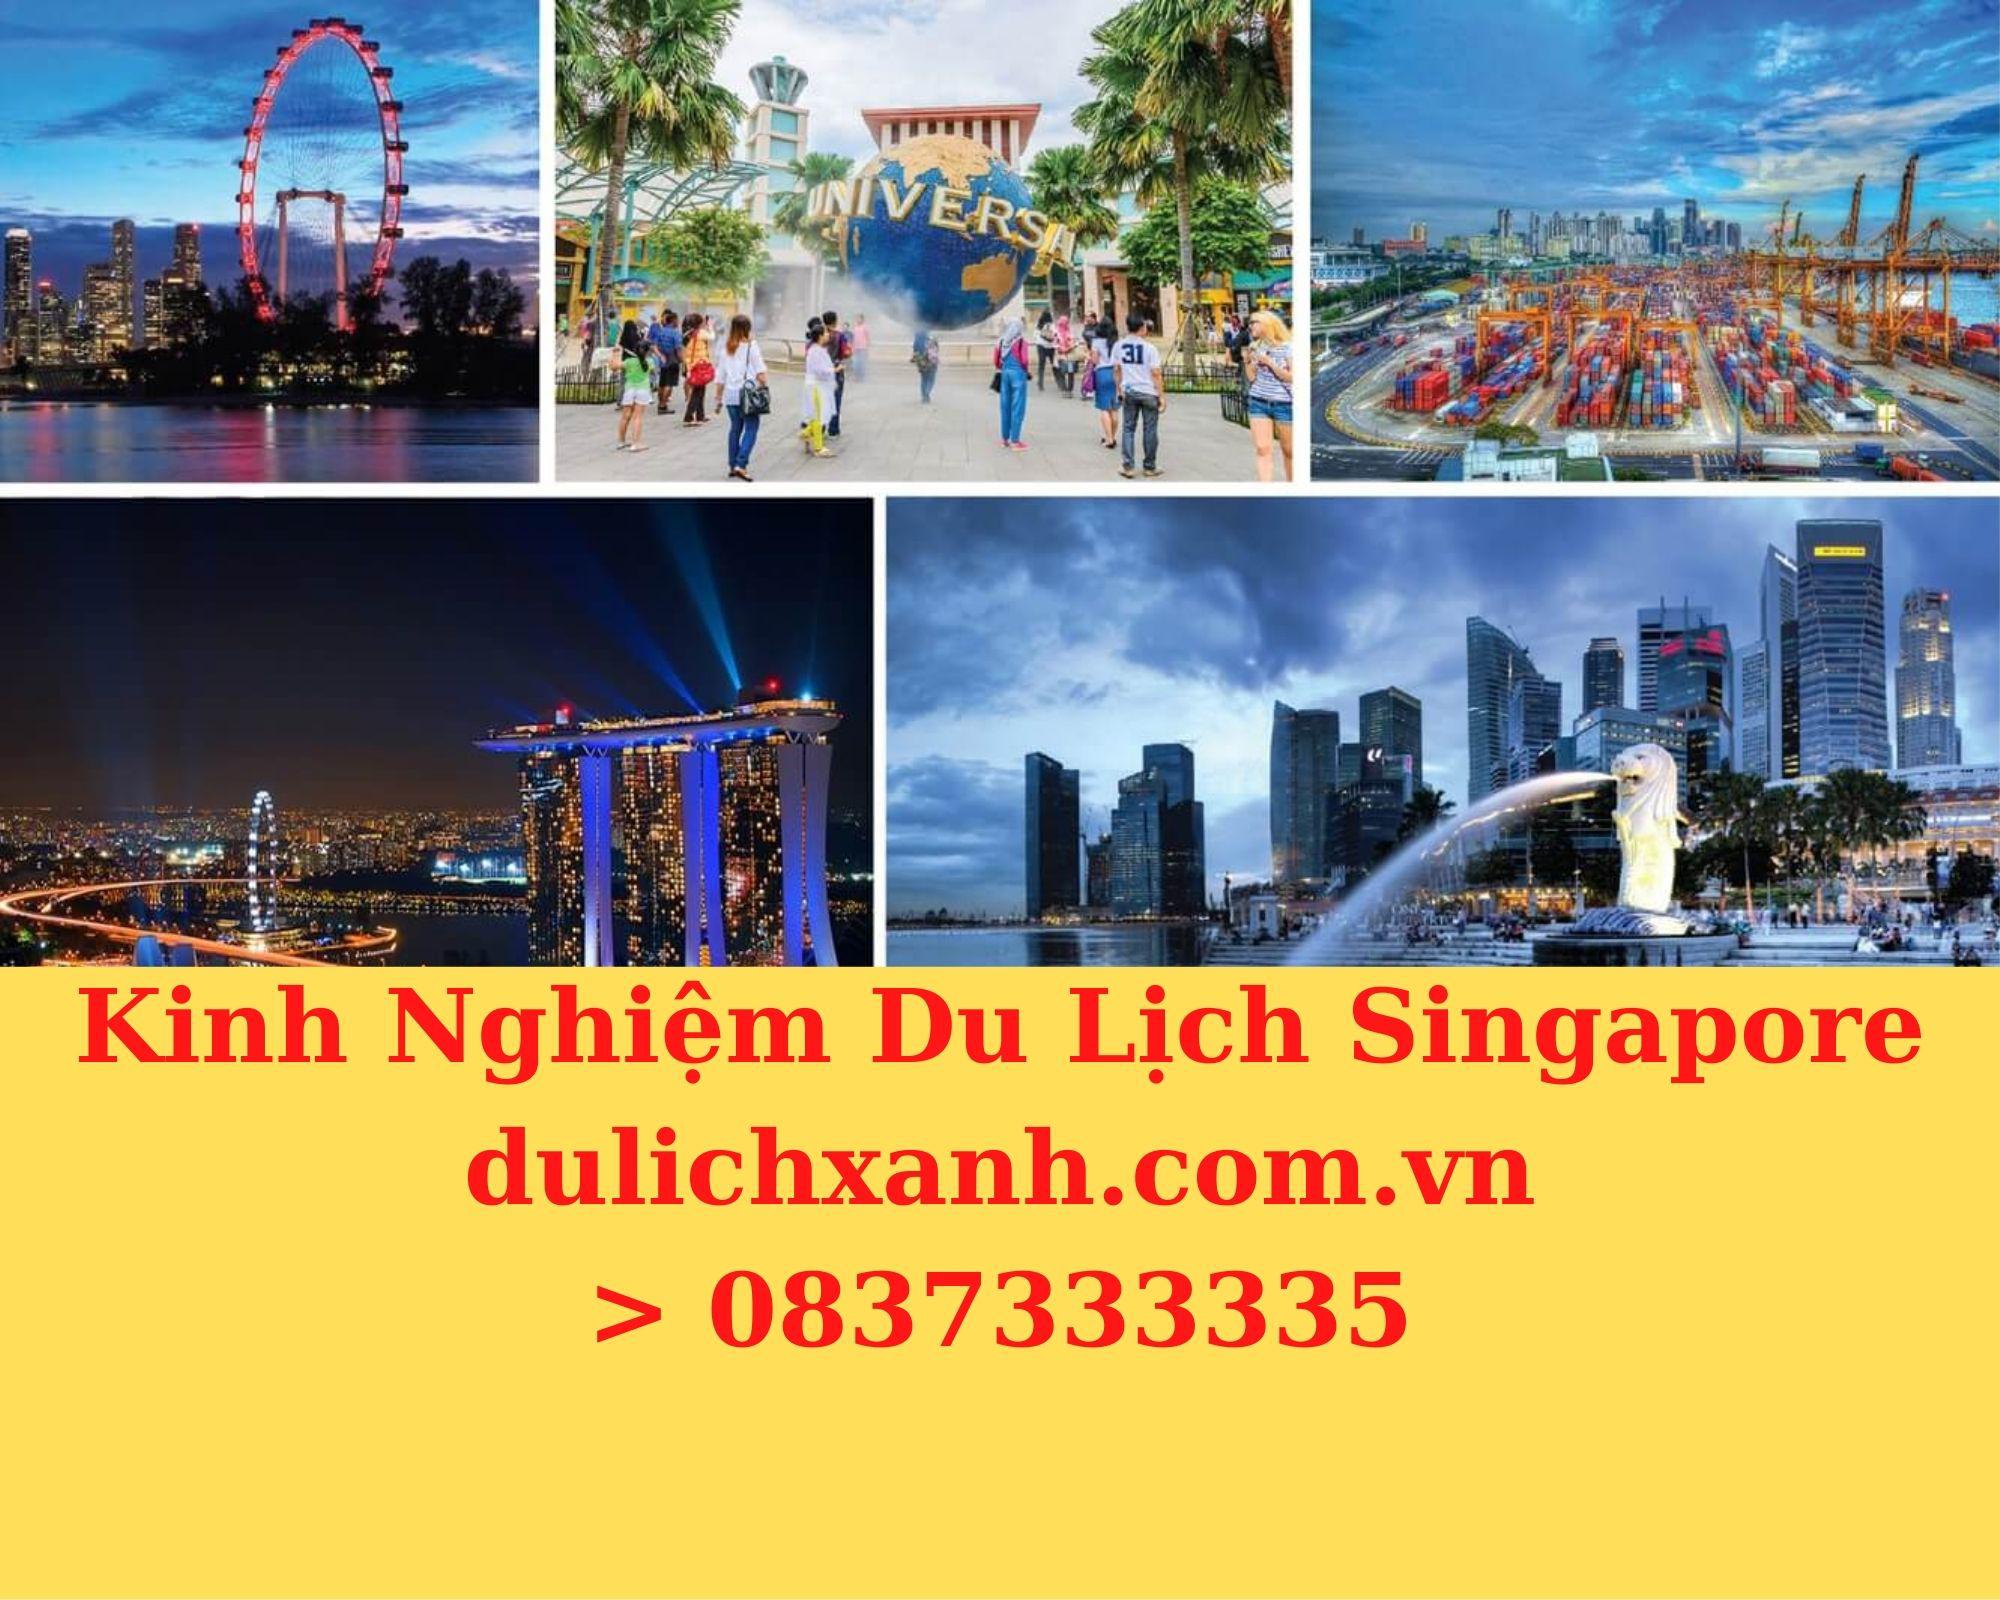 Kinh nghiệm du lịch Singapore 2022 chi tiết nhất